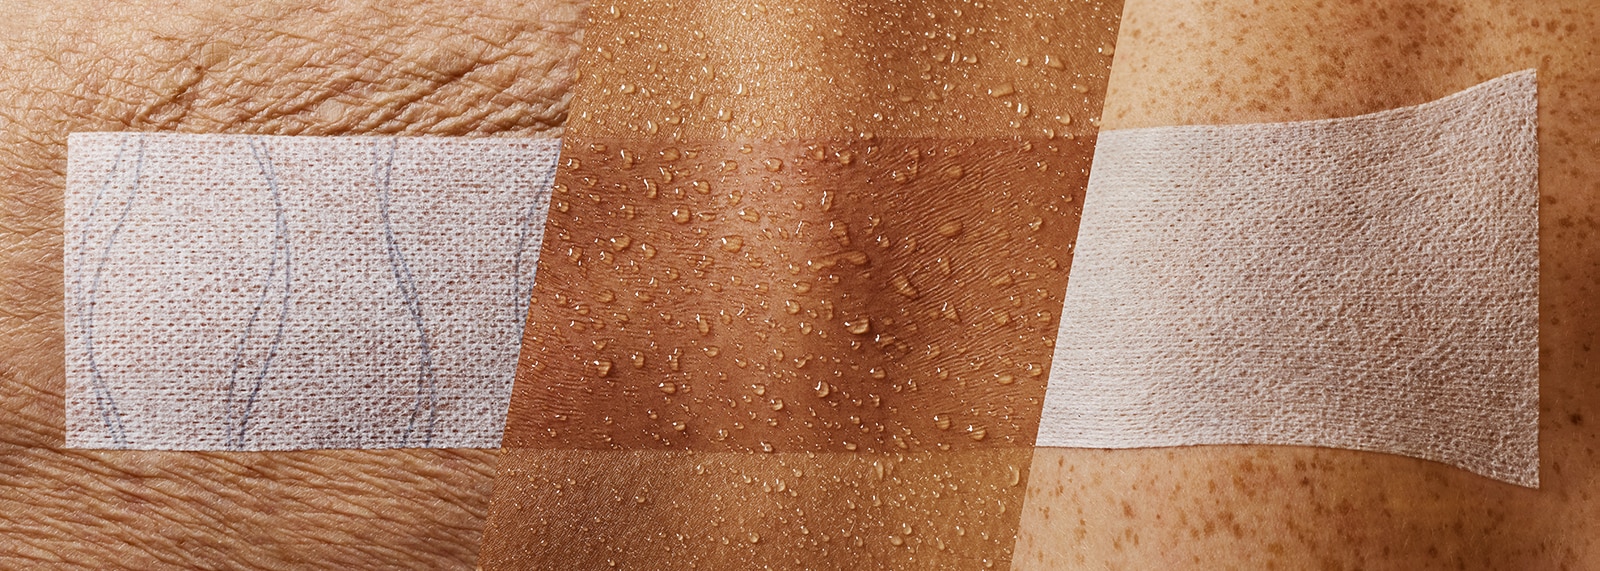 Gros plan de 3 pansements de fixation appliqués sur différents types de peaux (pansement sur une peau mature et ridée, pansement transparent sur une peau humide et pansement étiré sur une articulation)